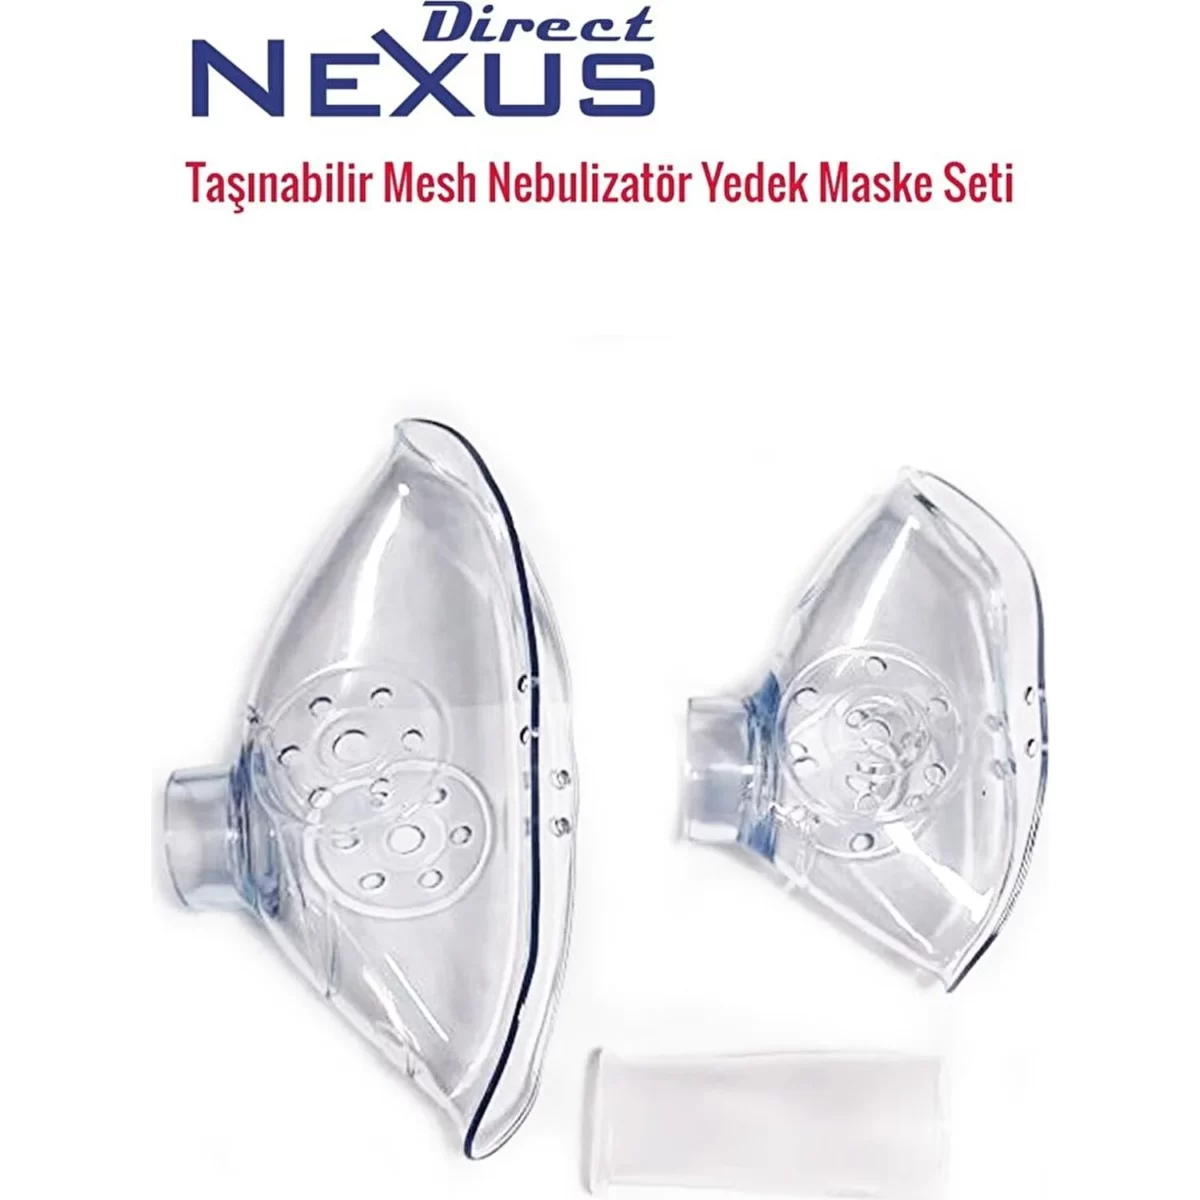 NEXUS | Direct Portable Mesh Şarj Edilebilir Nebulizatör | Akülü Tekerlekli Sandalye | Tekerlekli Sandalye